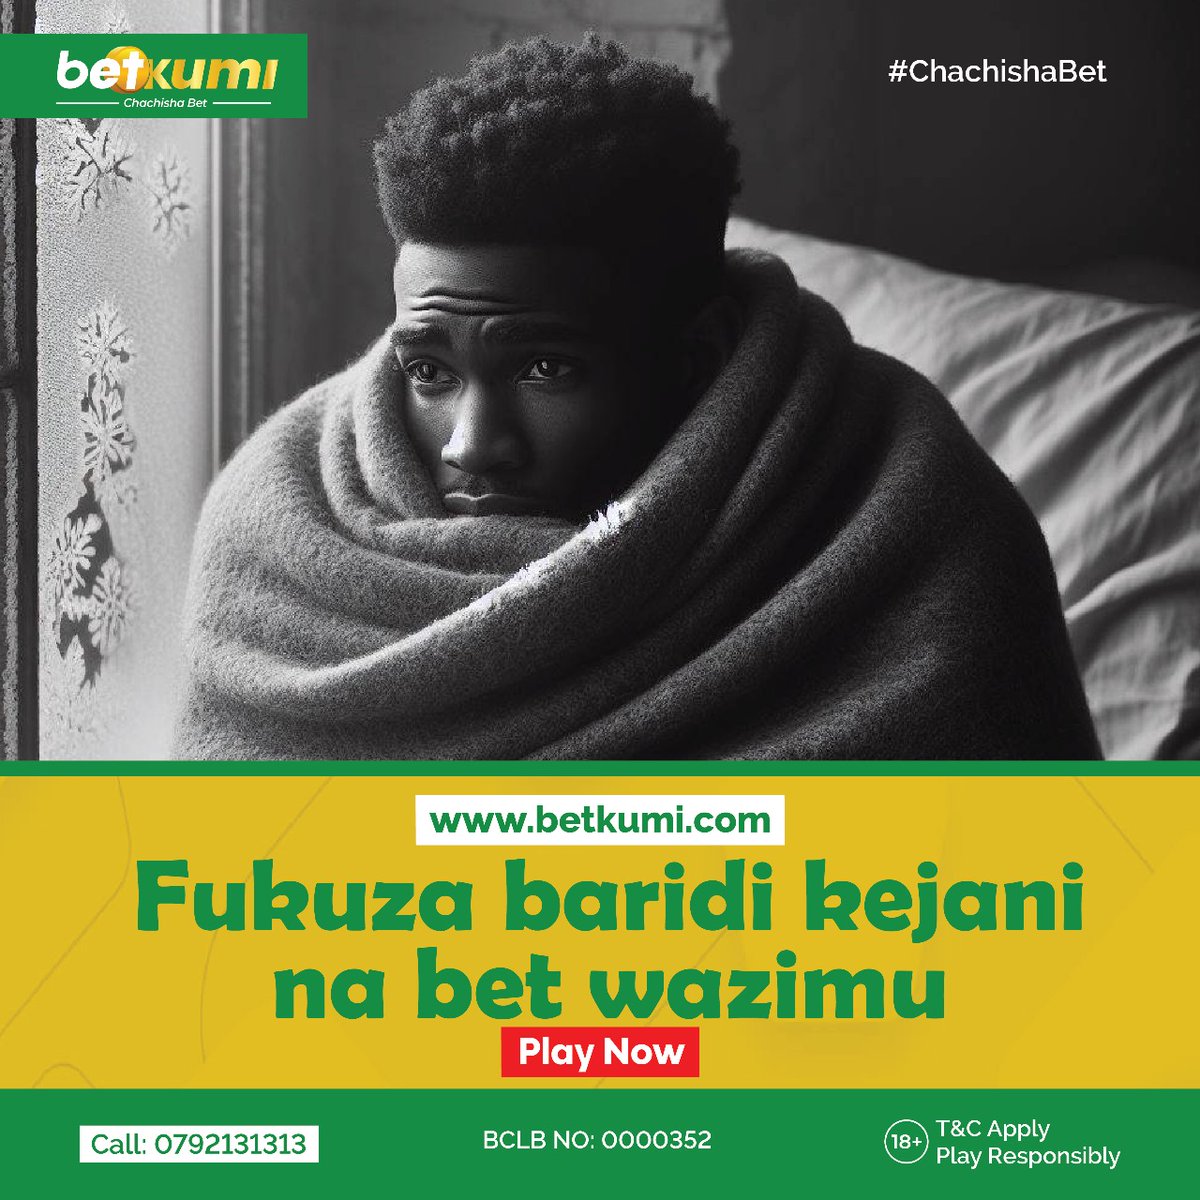 Usipige miayo bure kwa nyumba na unawezajipin na big wins at Betkumi.com #chachishabet